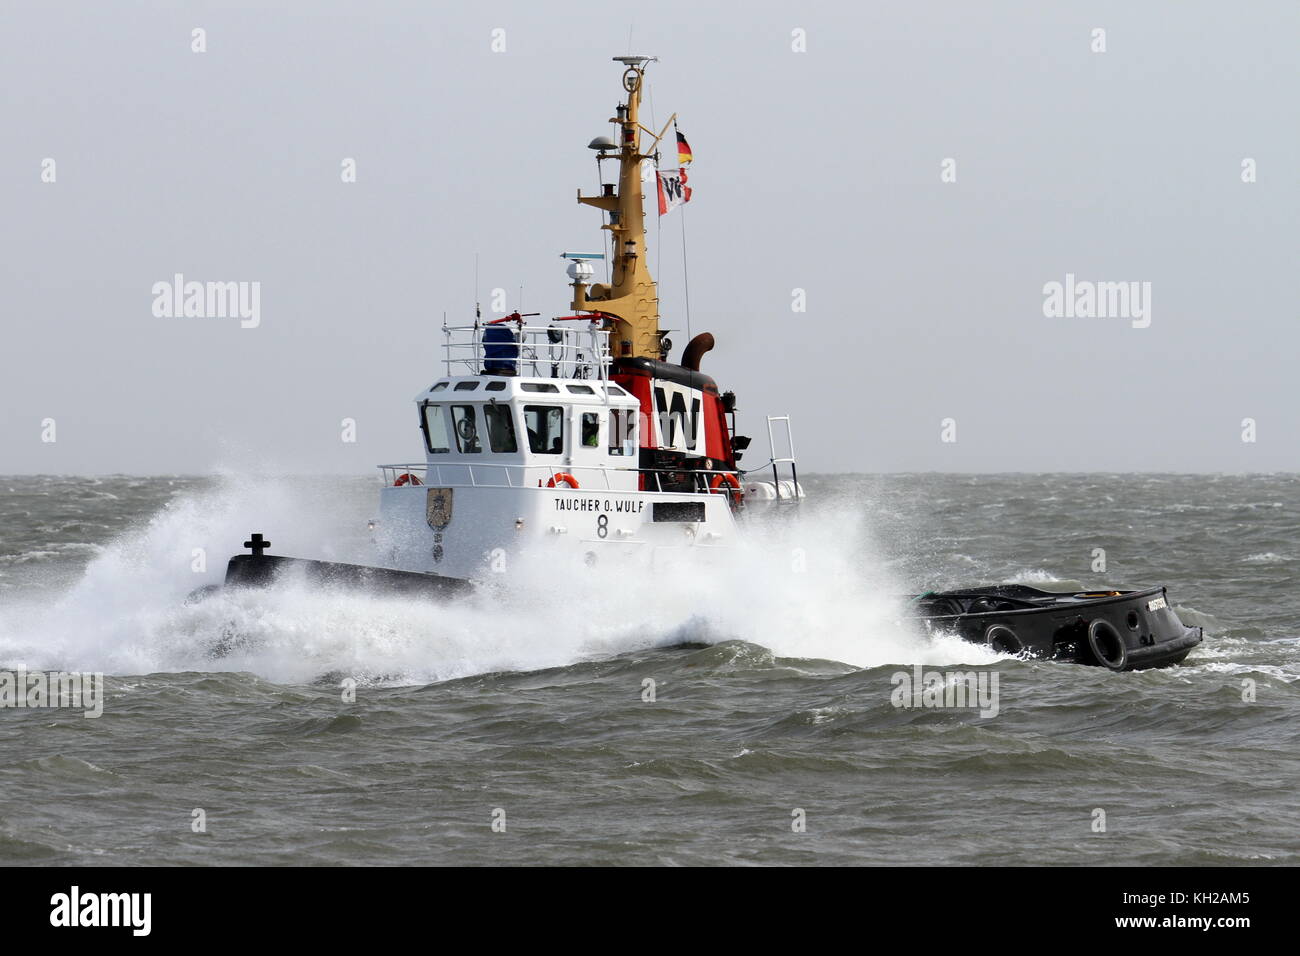 Le remorqueur portuaire divers O Wulf 8 quitte le port de Cuxhaven sur mer agitée le 30 mars 2015. Banque D'Images